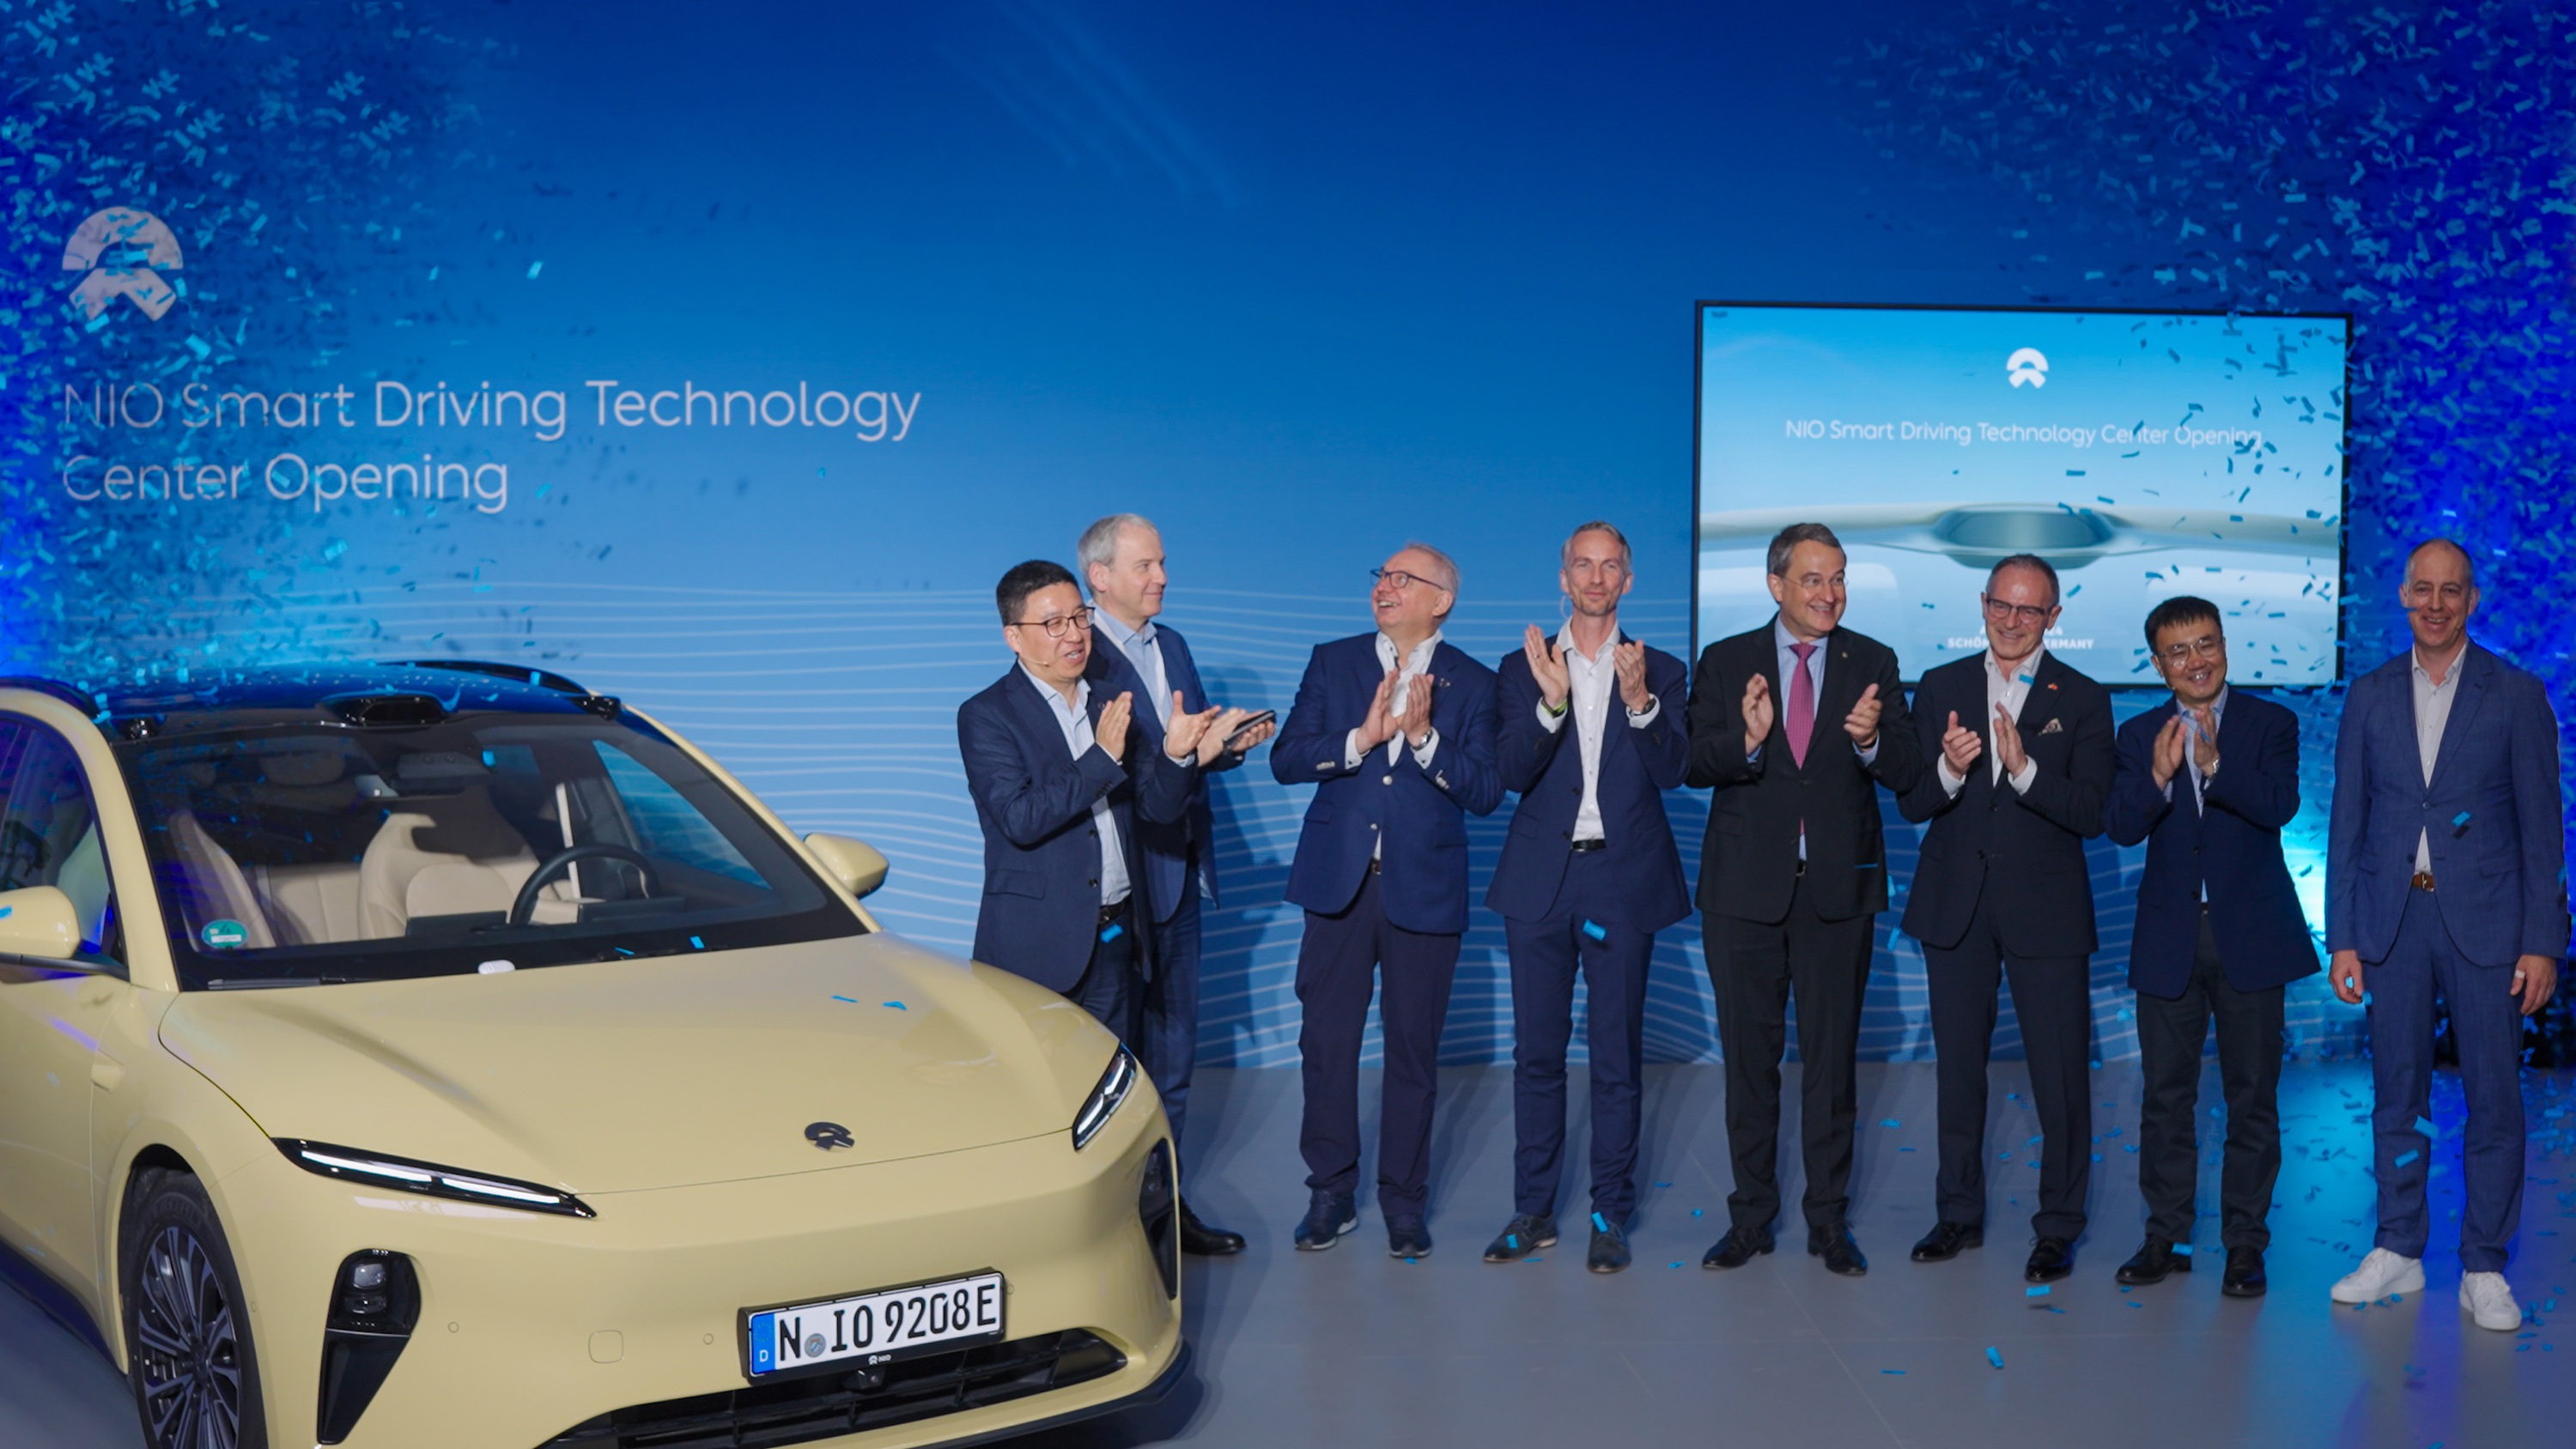 NIO:s nya Smart Driving Technology Center i Berlin sätter ny standard för körsäkerhet och komfort